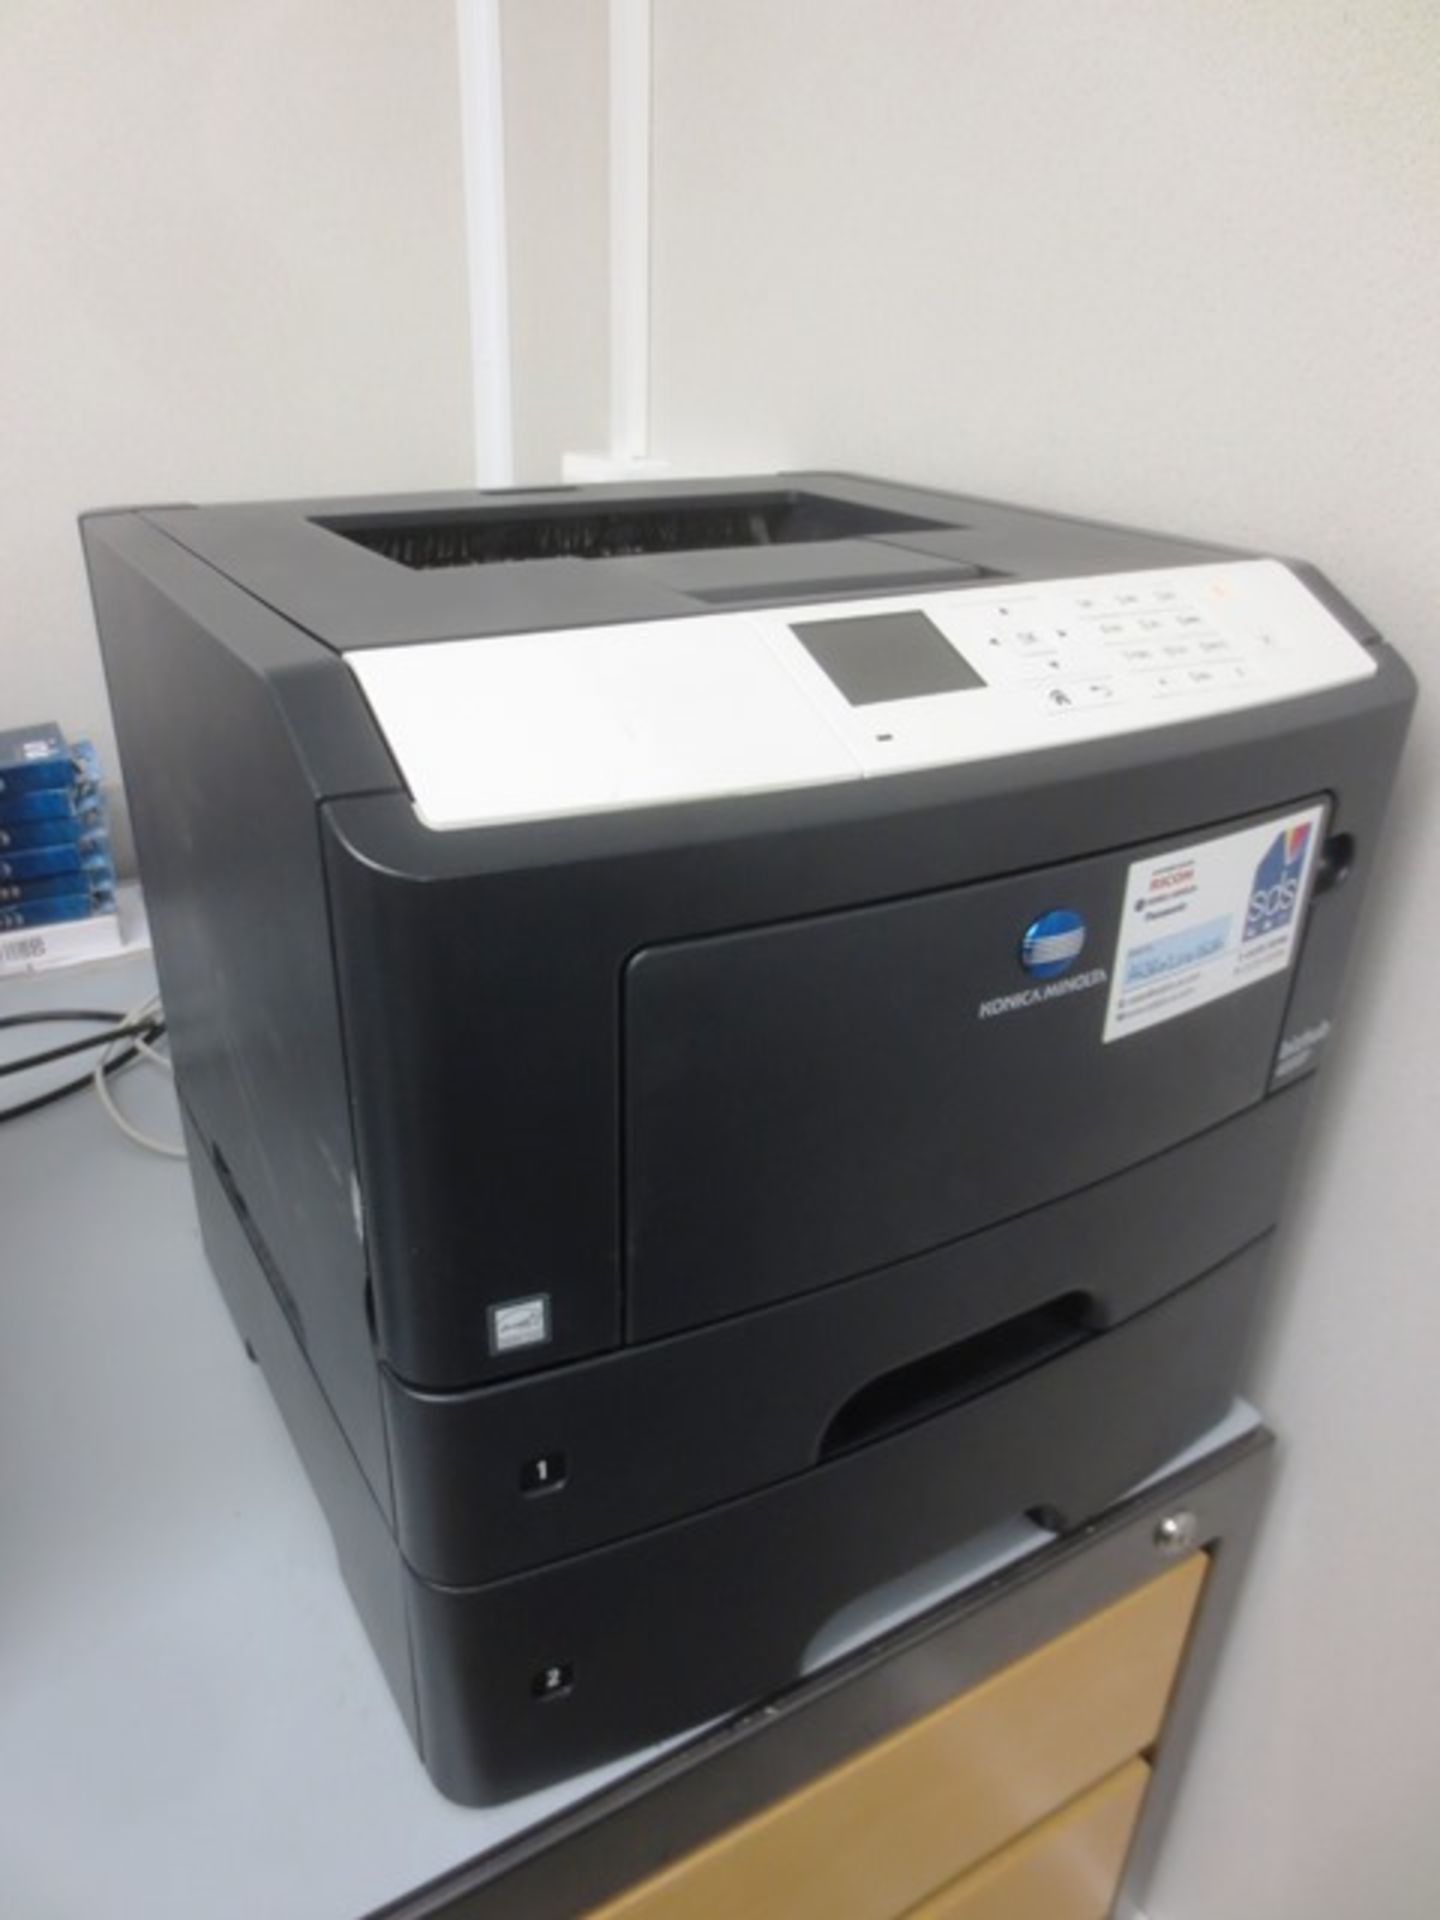 Konica Minolta Bizhub 4000P laserjet printer